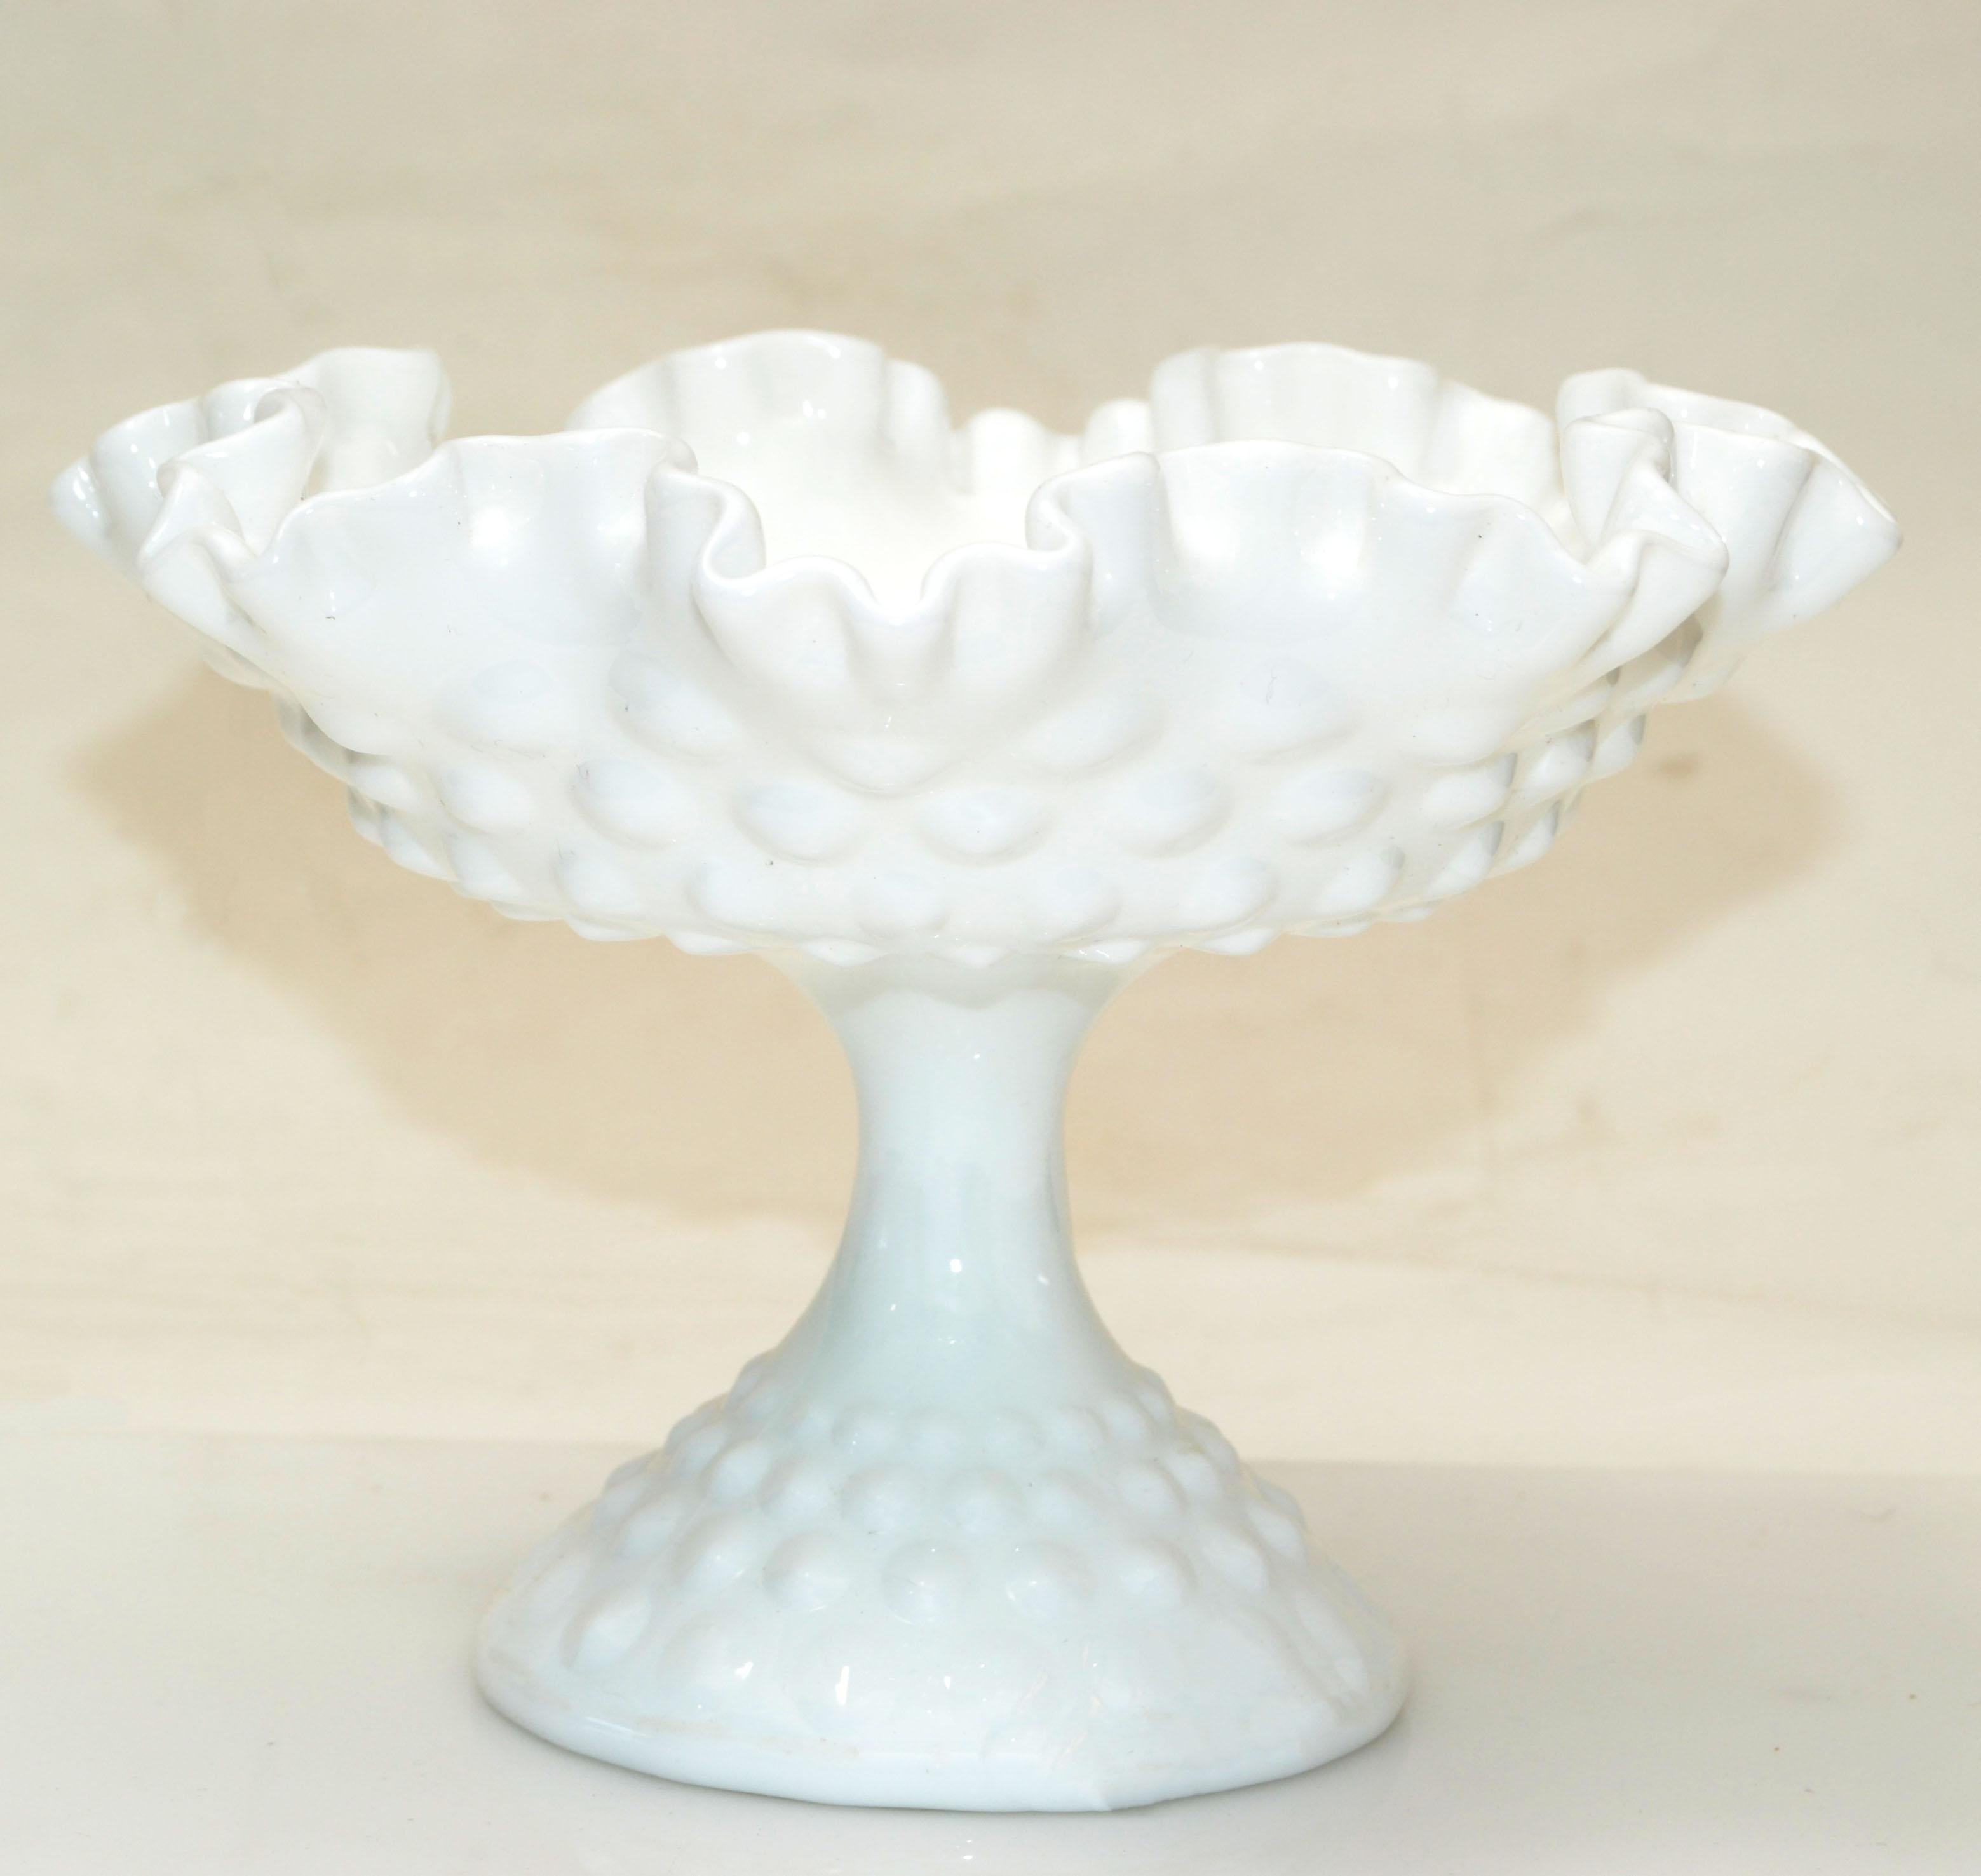 Fenton Art Glass style hobnail white ruffled milk glass footed bowl, candy dish or whip cream serving bowl from the 1970. 
Une grande qualité de fabrication avec de l'élégance.
Tout simplement magnifique.